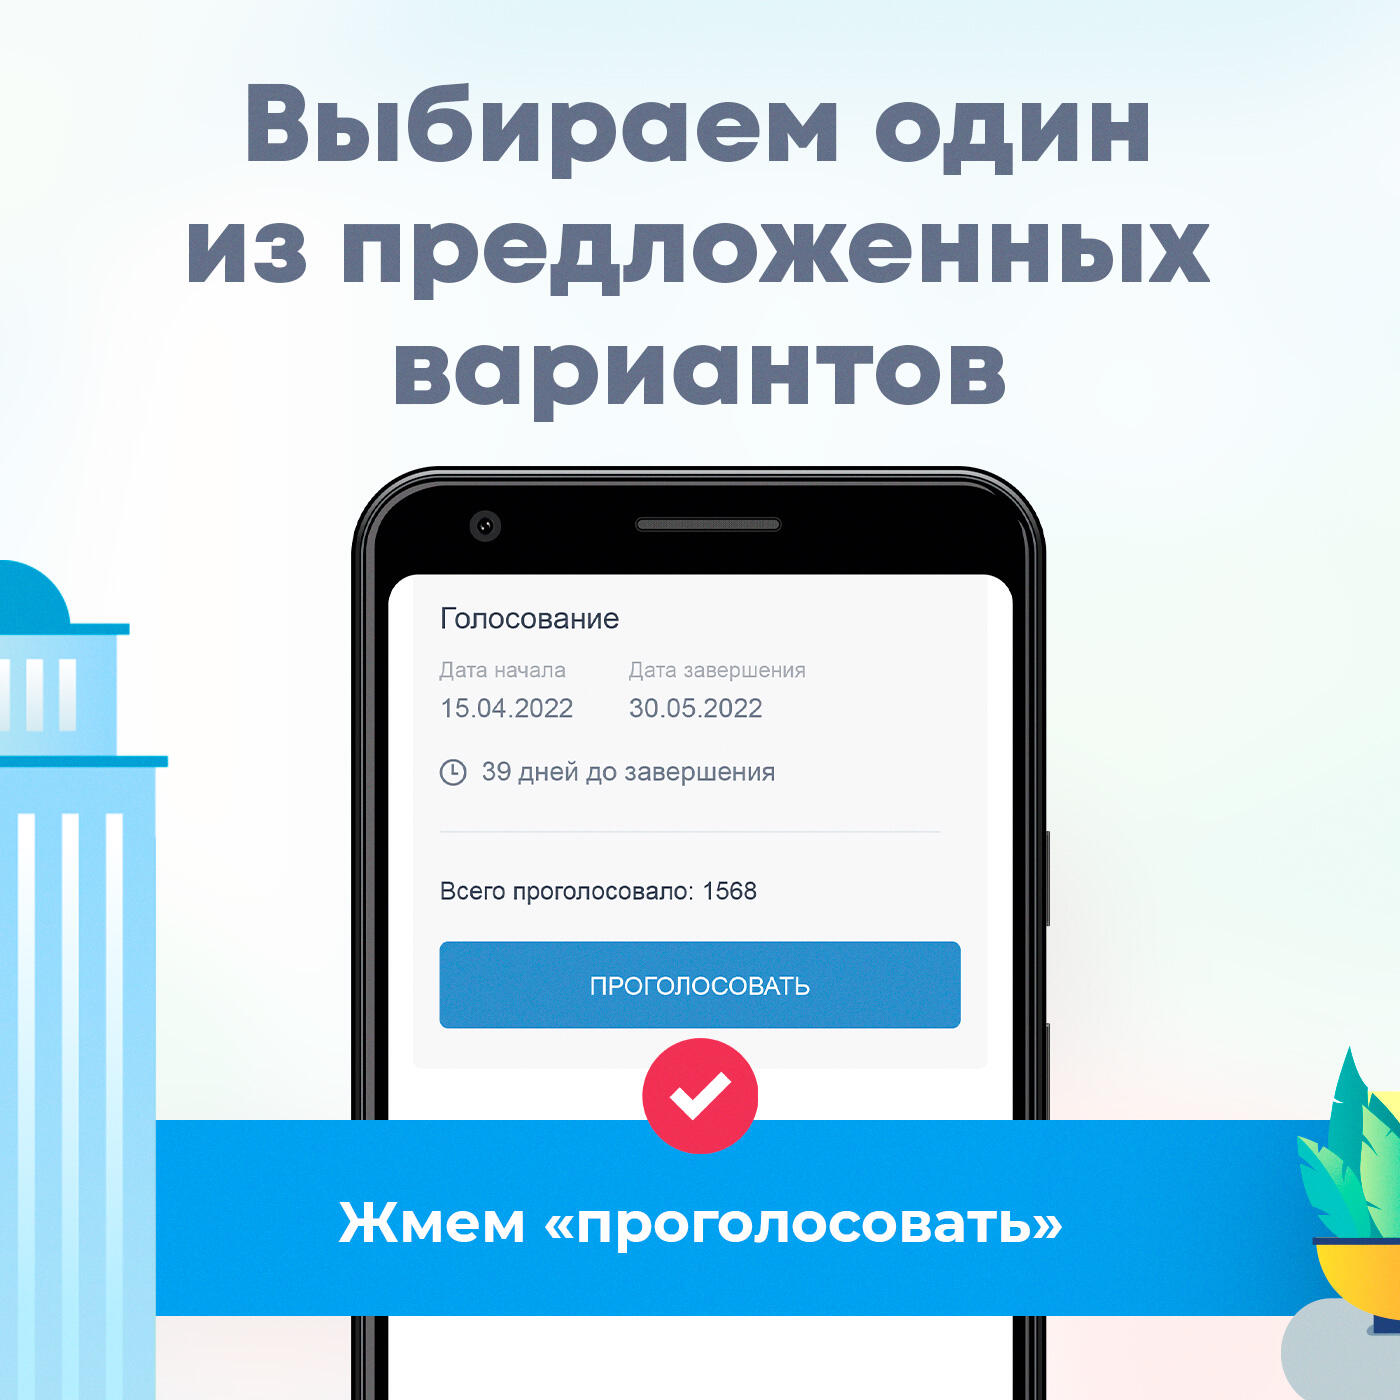 Gorodsreda tatar ru голосование. Госуслуги голосование за благоустройство. Проголосовать на госуслугах. Как проголосовать на госуслугах за благоустройство территории. Скриншот голосования за благоустройство.